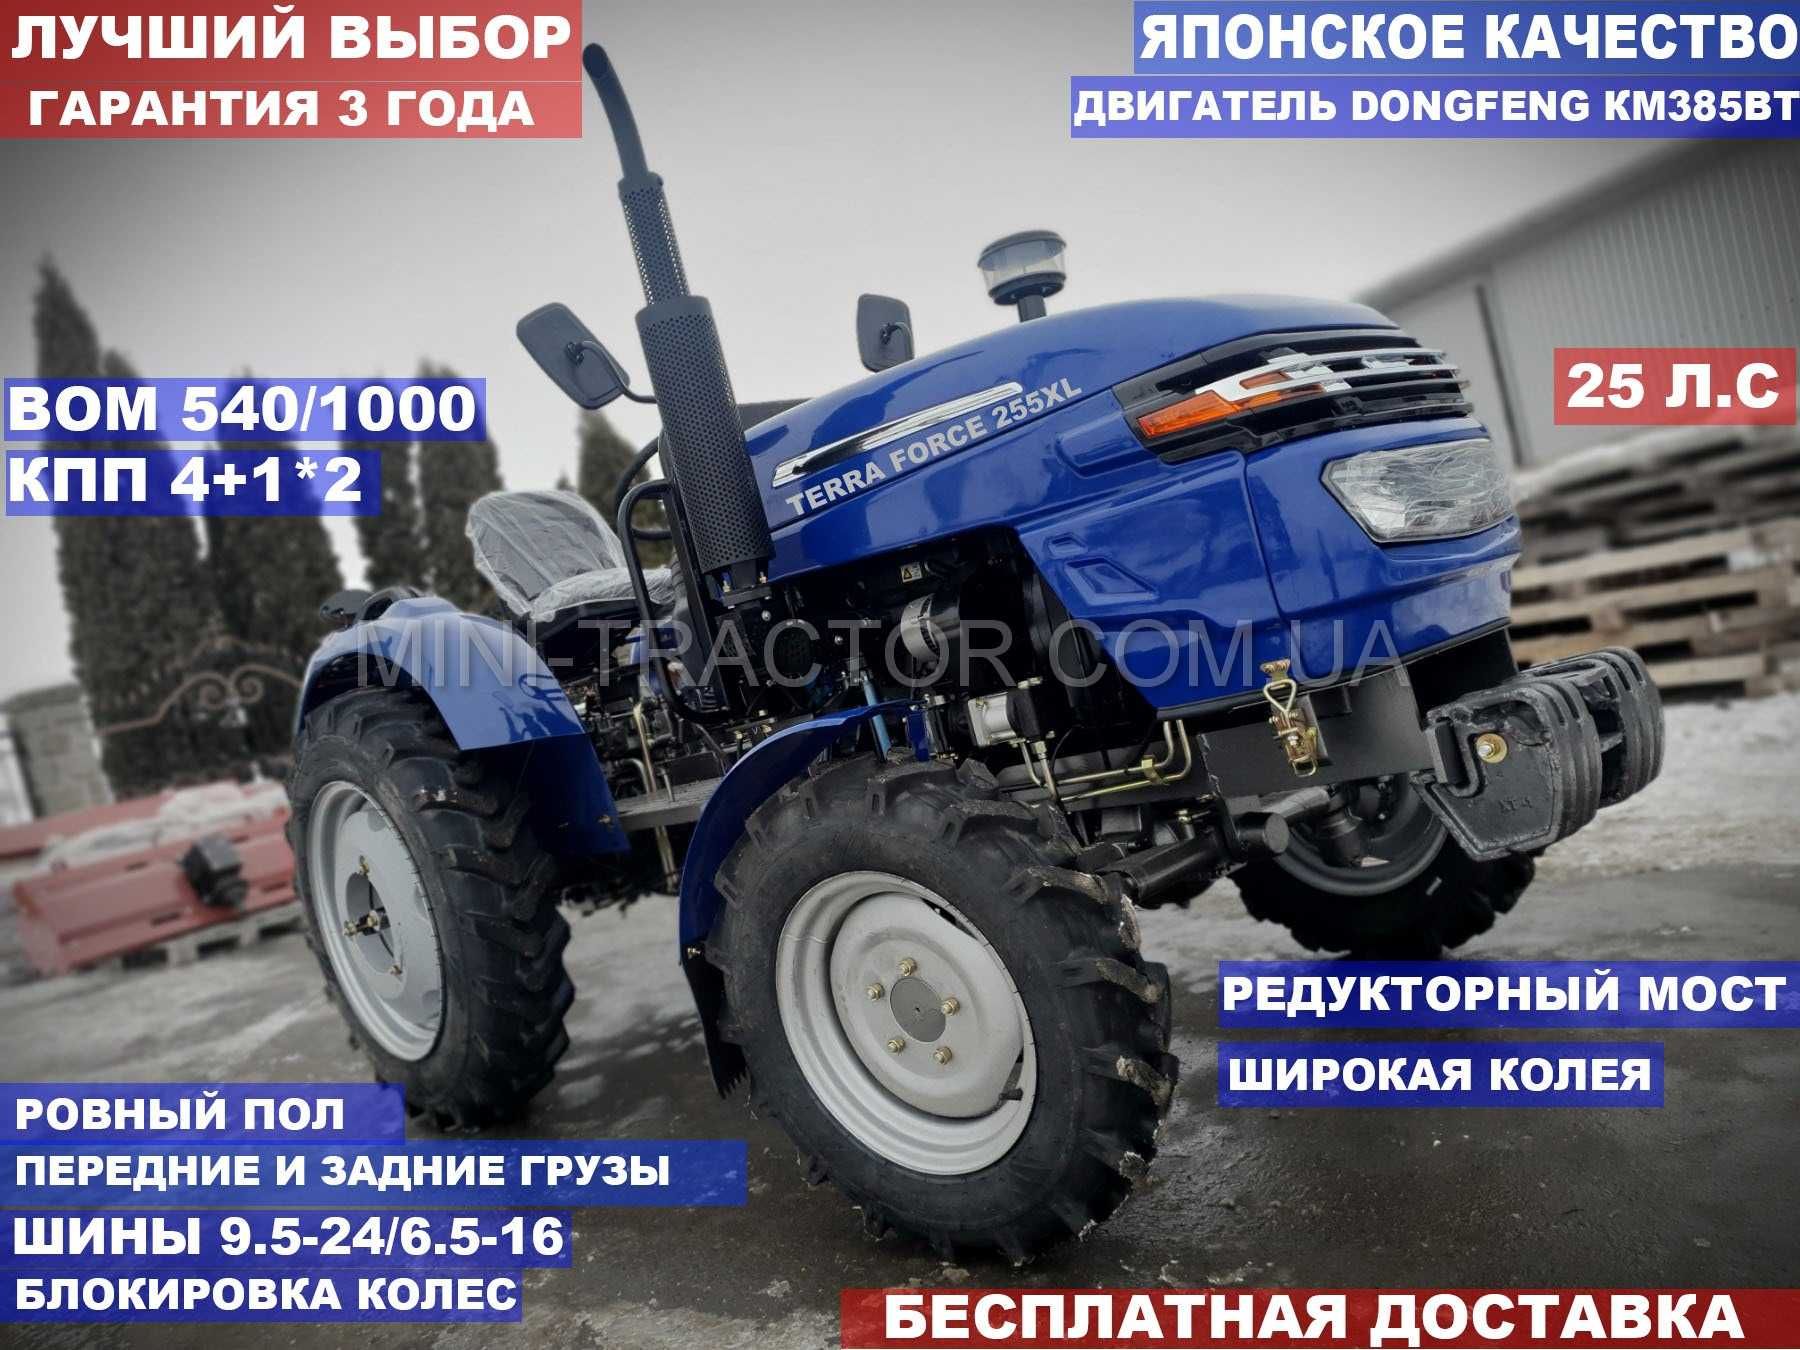 Повнопривідний трактор мінітрактор ТЕРРА ФОРС 255XL аналогDW Сінтай244